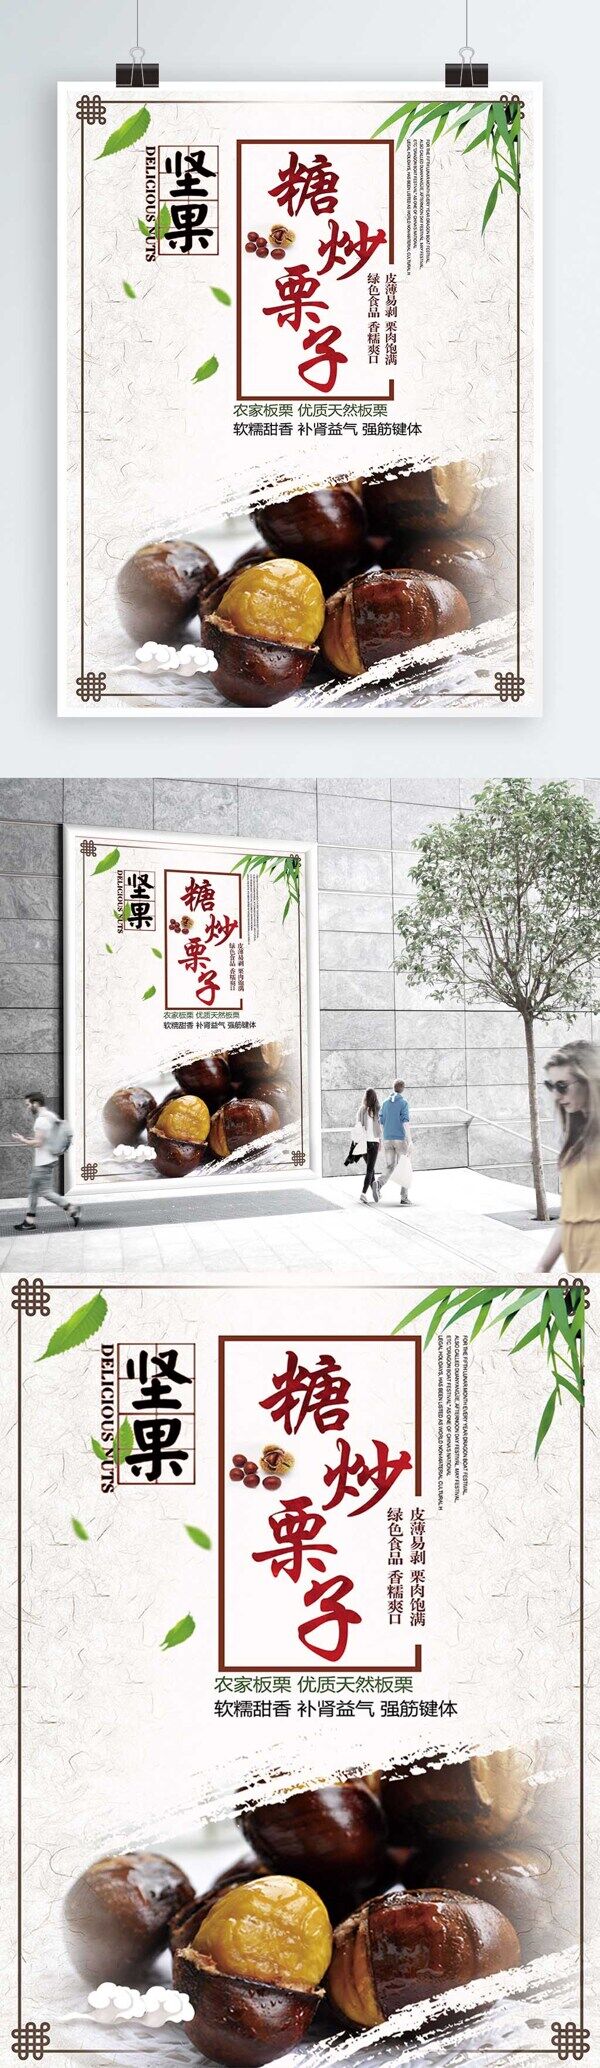 白色背景简约中国风糖炒栗子宣传海报